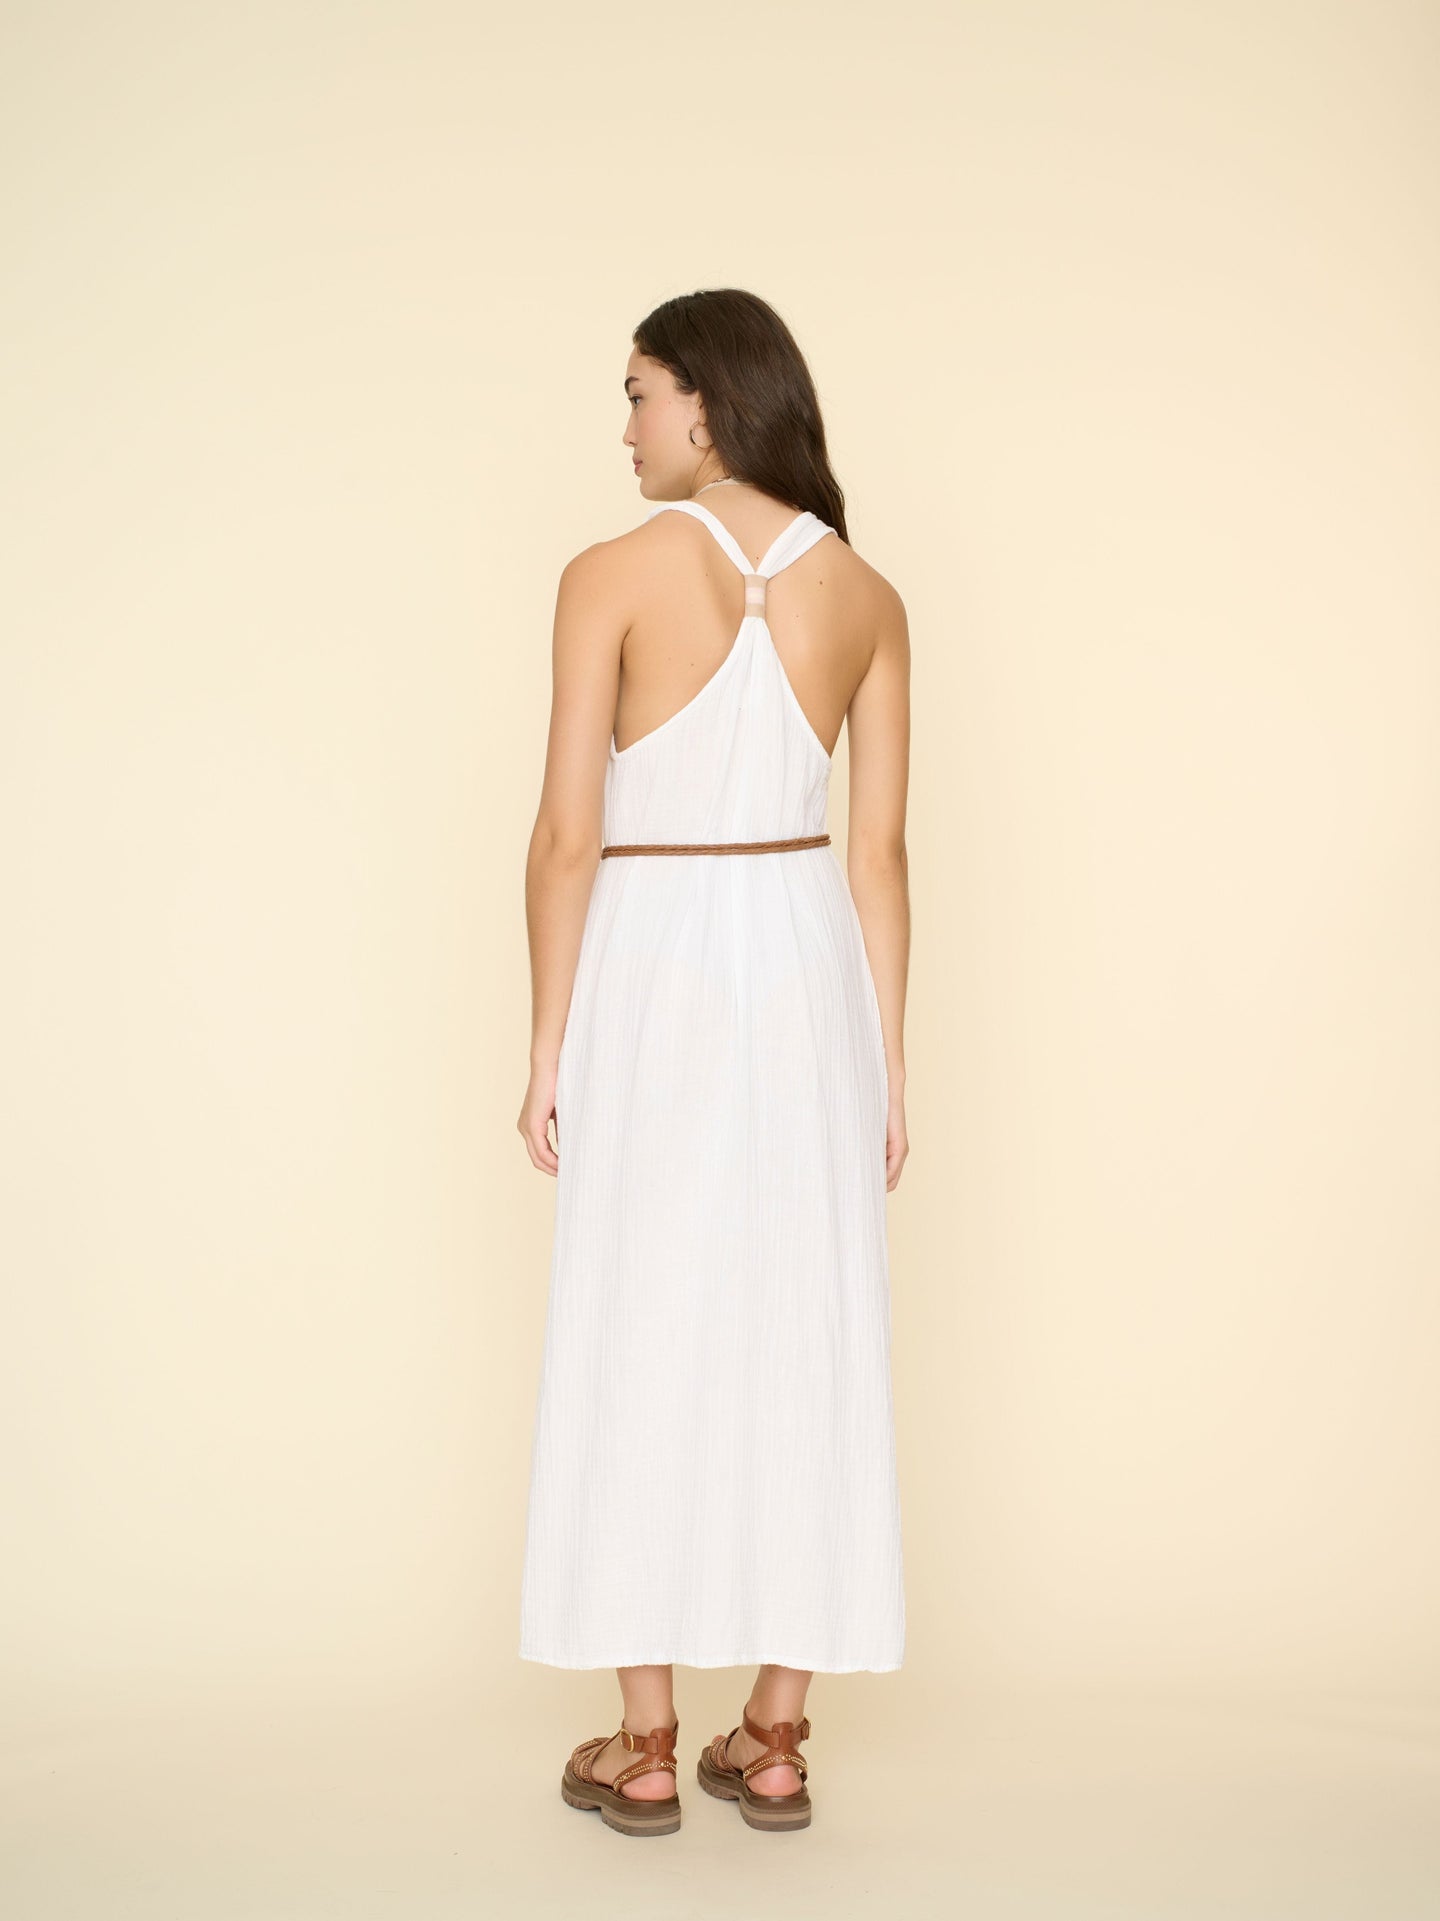 Xirena Dress White Atlas Dress